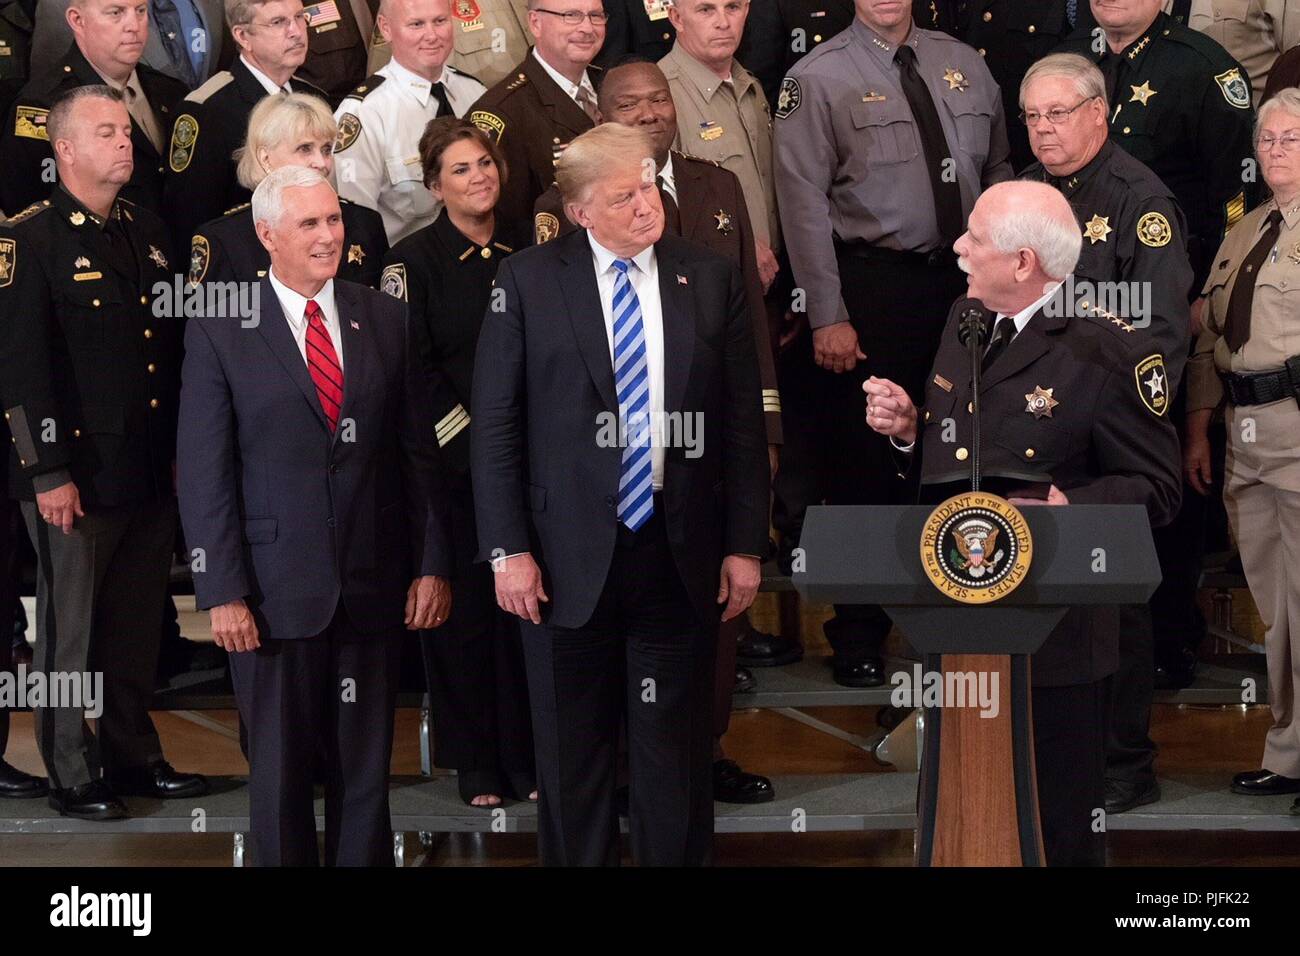 U.S presidente Donald Trump e Vice Presidente Mike Pence guardare come sceriffo Thomas Hodgson di Bristol County Massachusetts offre commento durante un evento nella Sala Est della Casa Bianca il 5 settembre 2018 a Washington, DC. Foto Stock